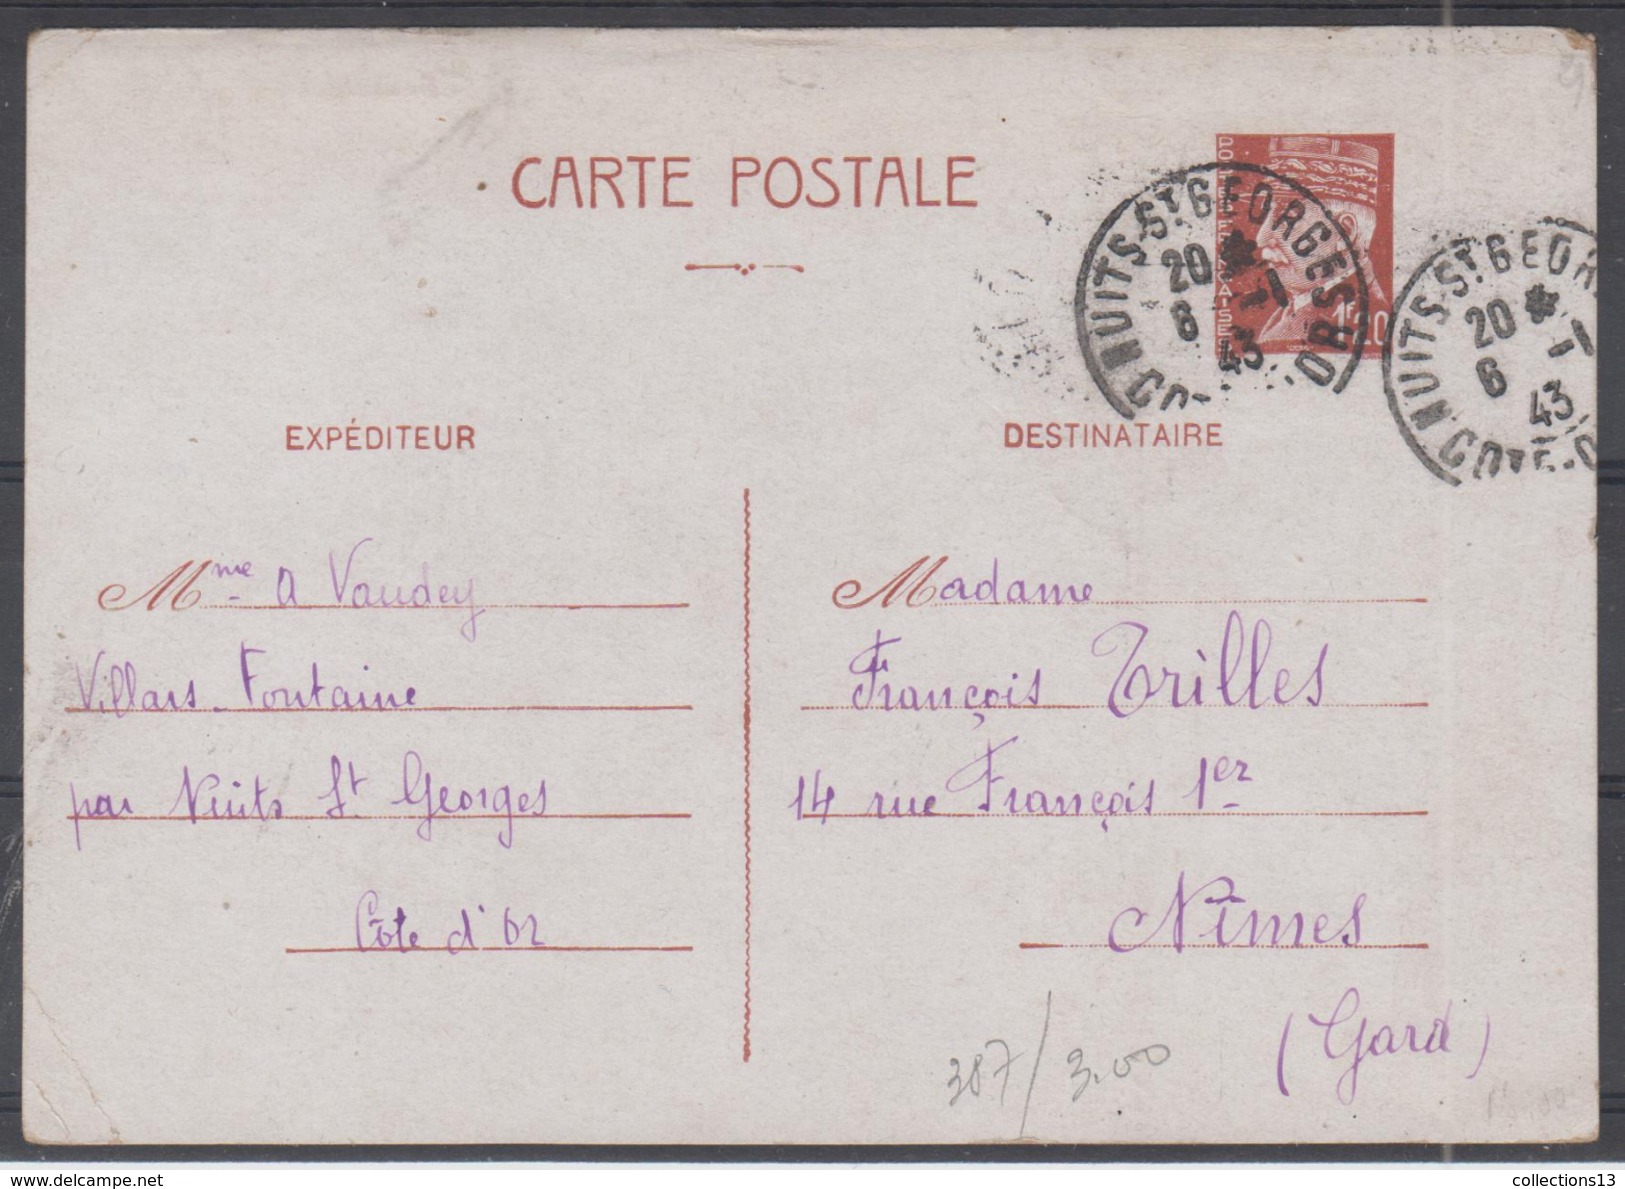 FRANCE - 20 entiers-postaus + 6 lettres diverses